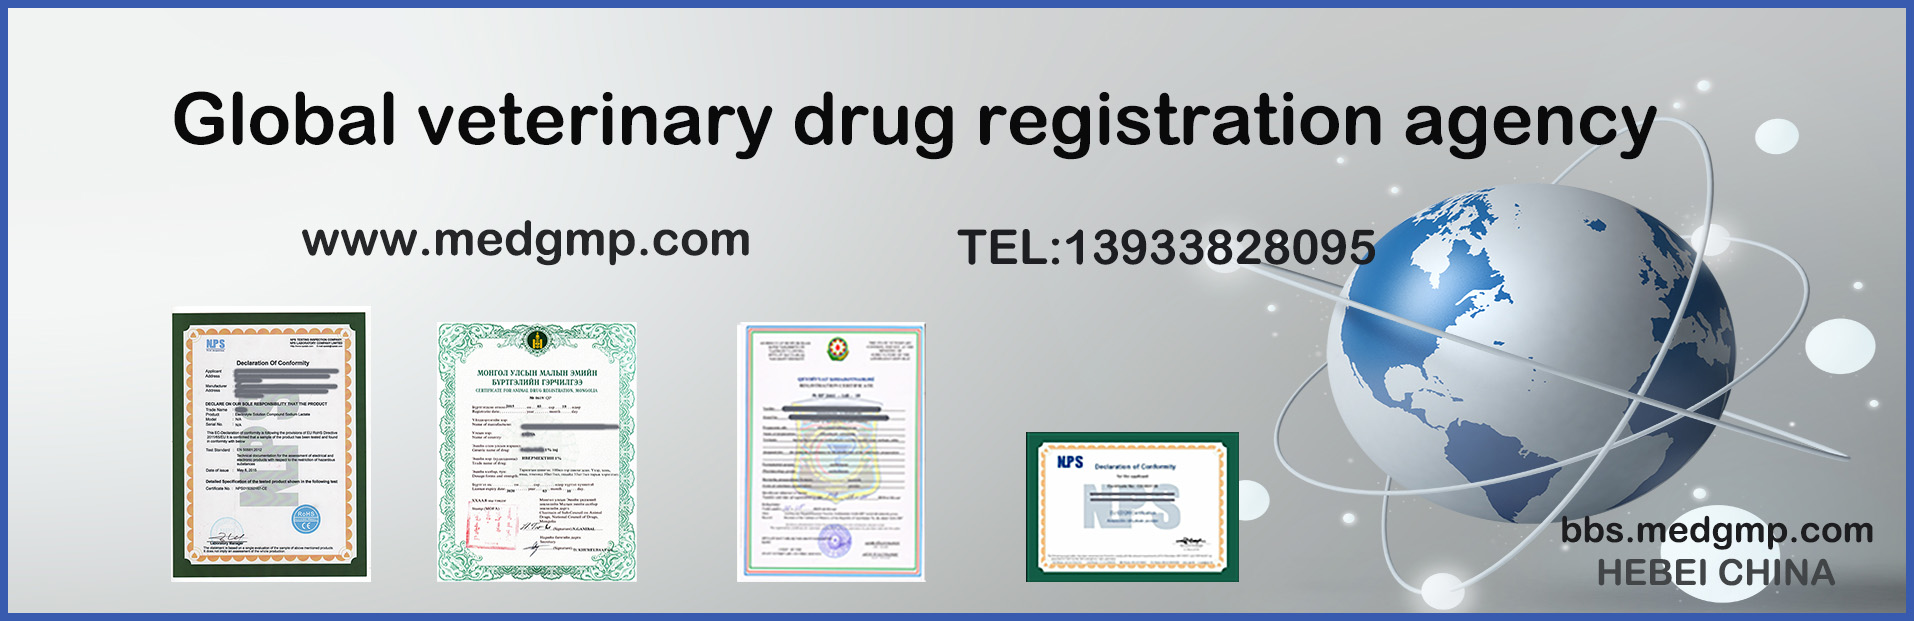 Global veterinary drug registration agency